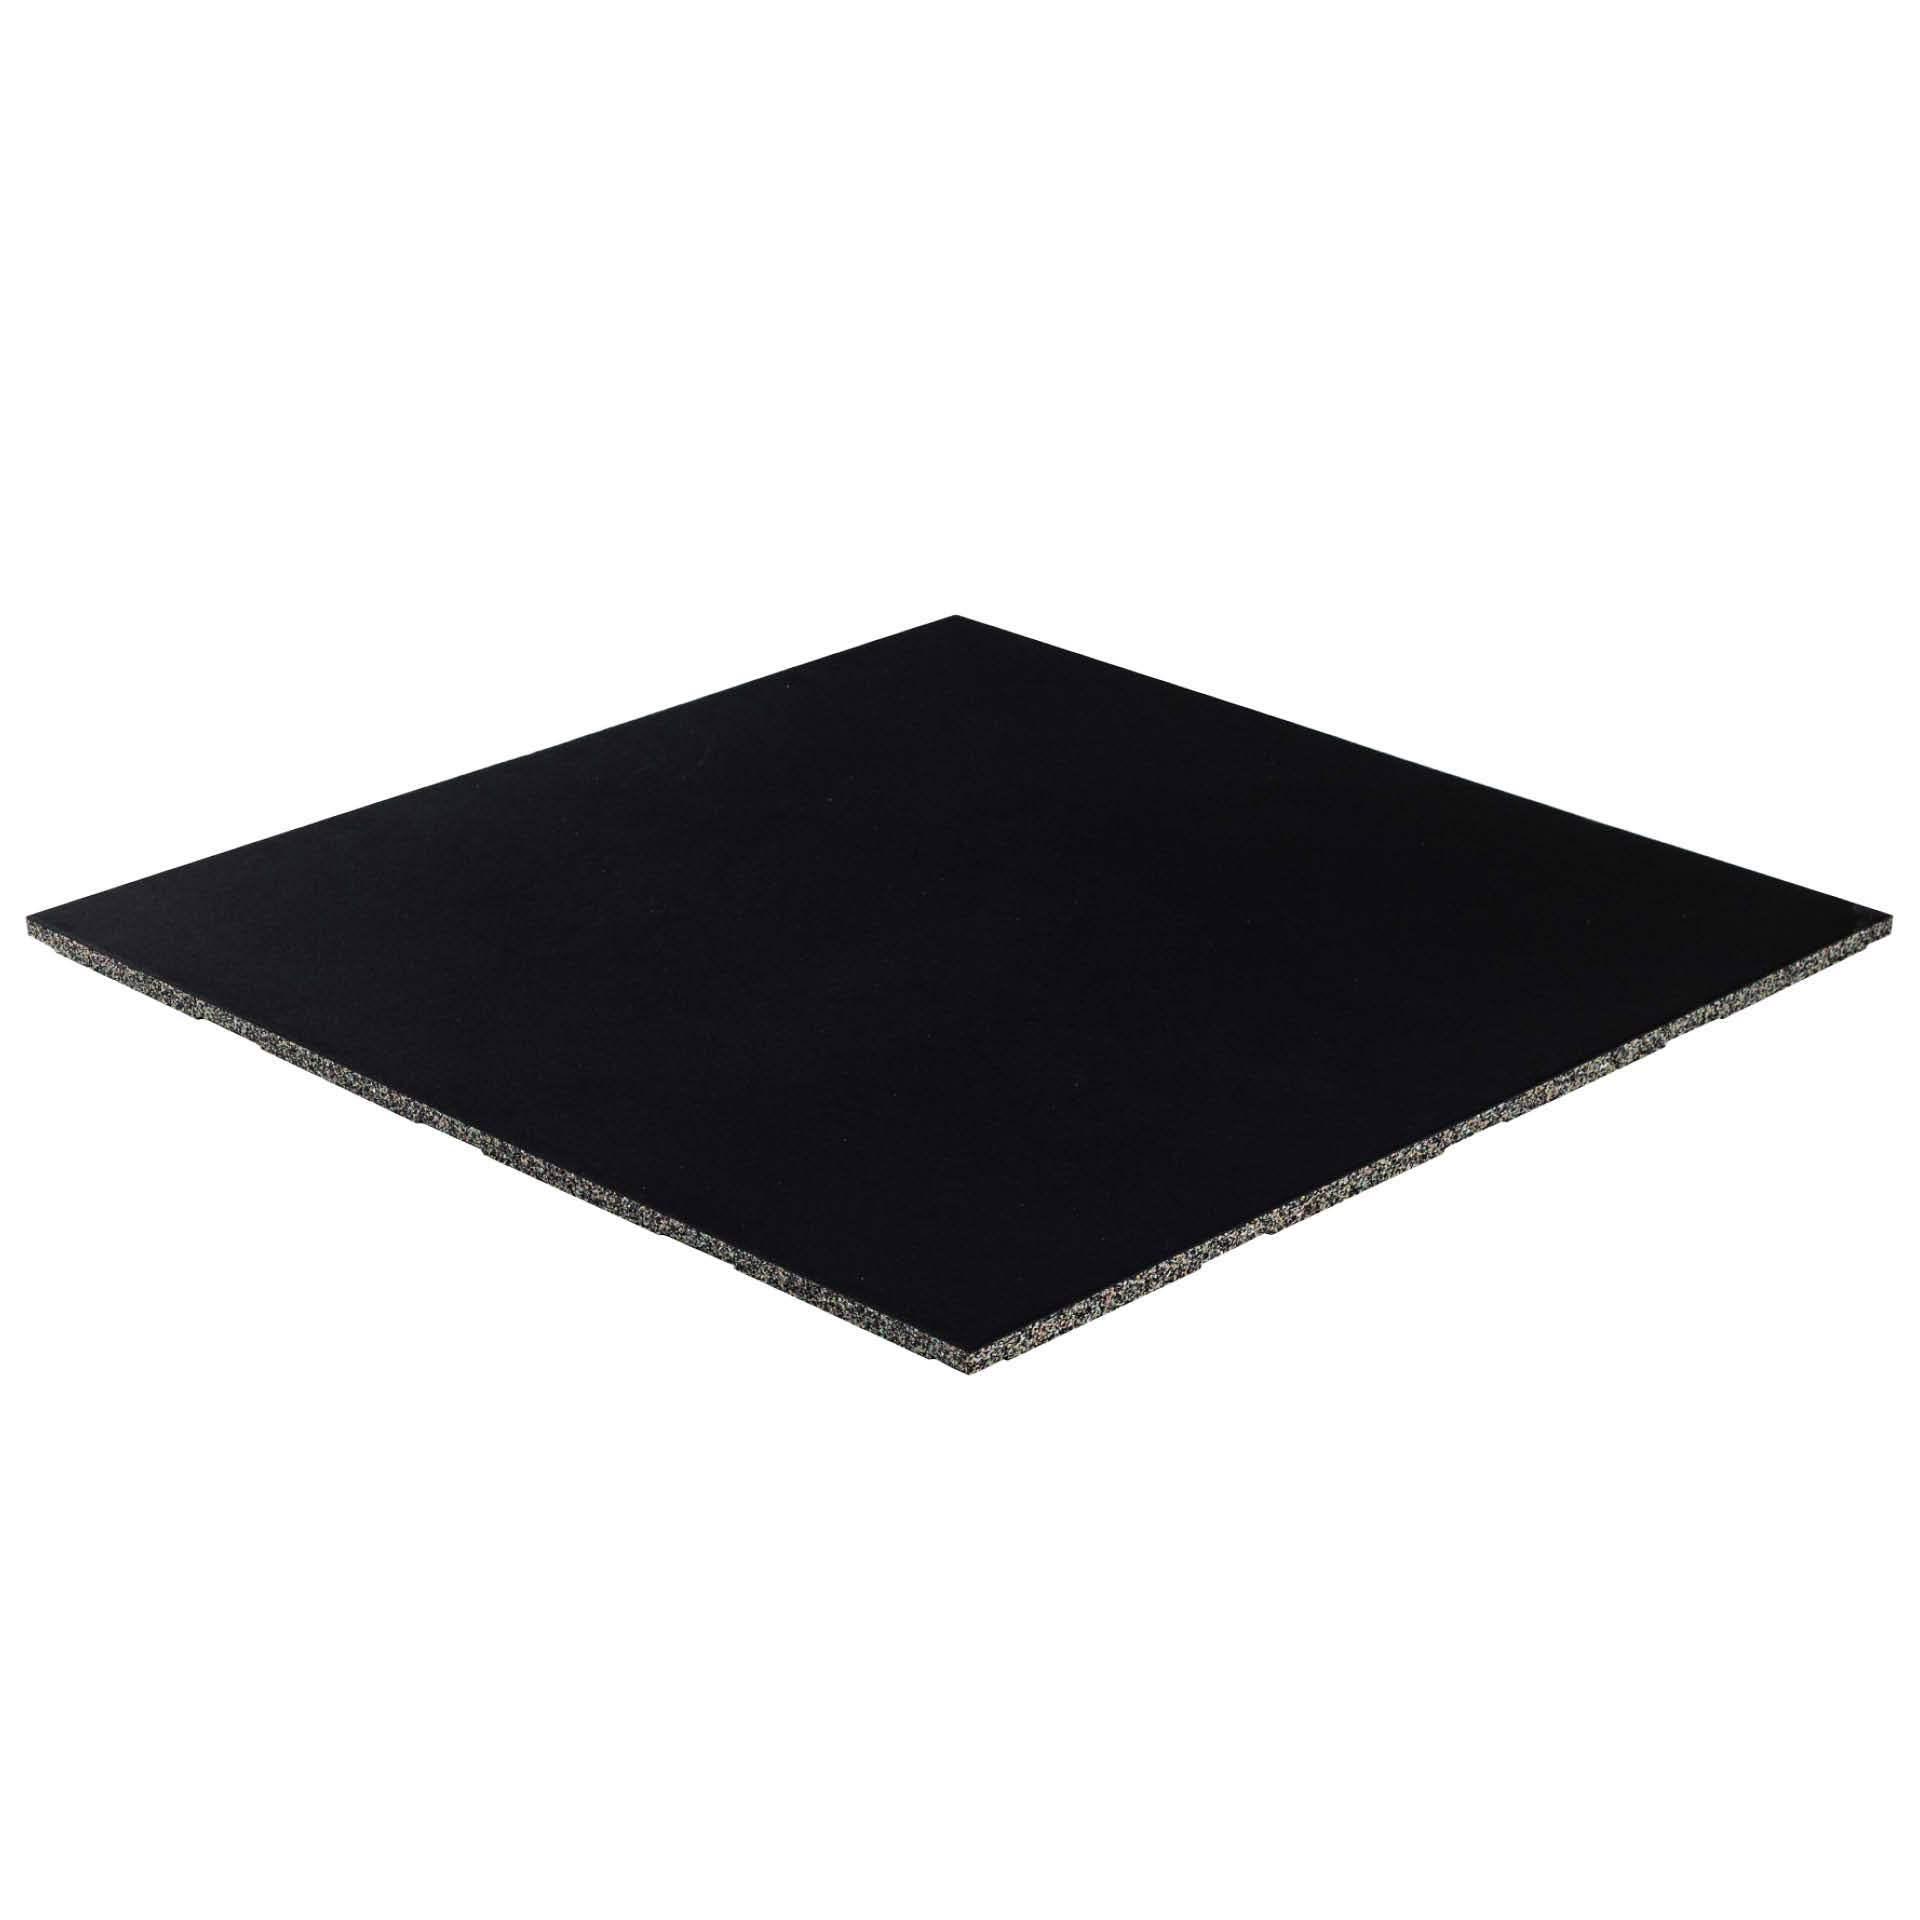 3) R+T Connect rubber mat 1x1m / 20mm (BLACK)